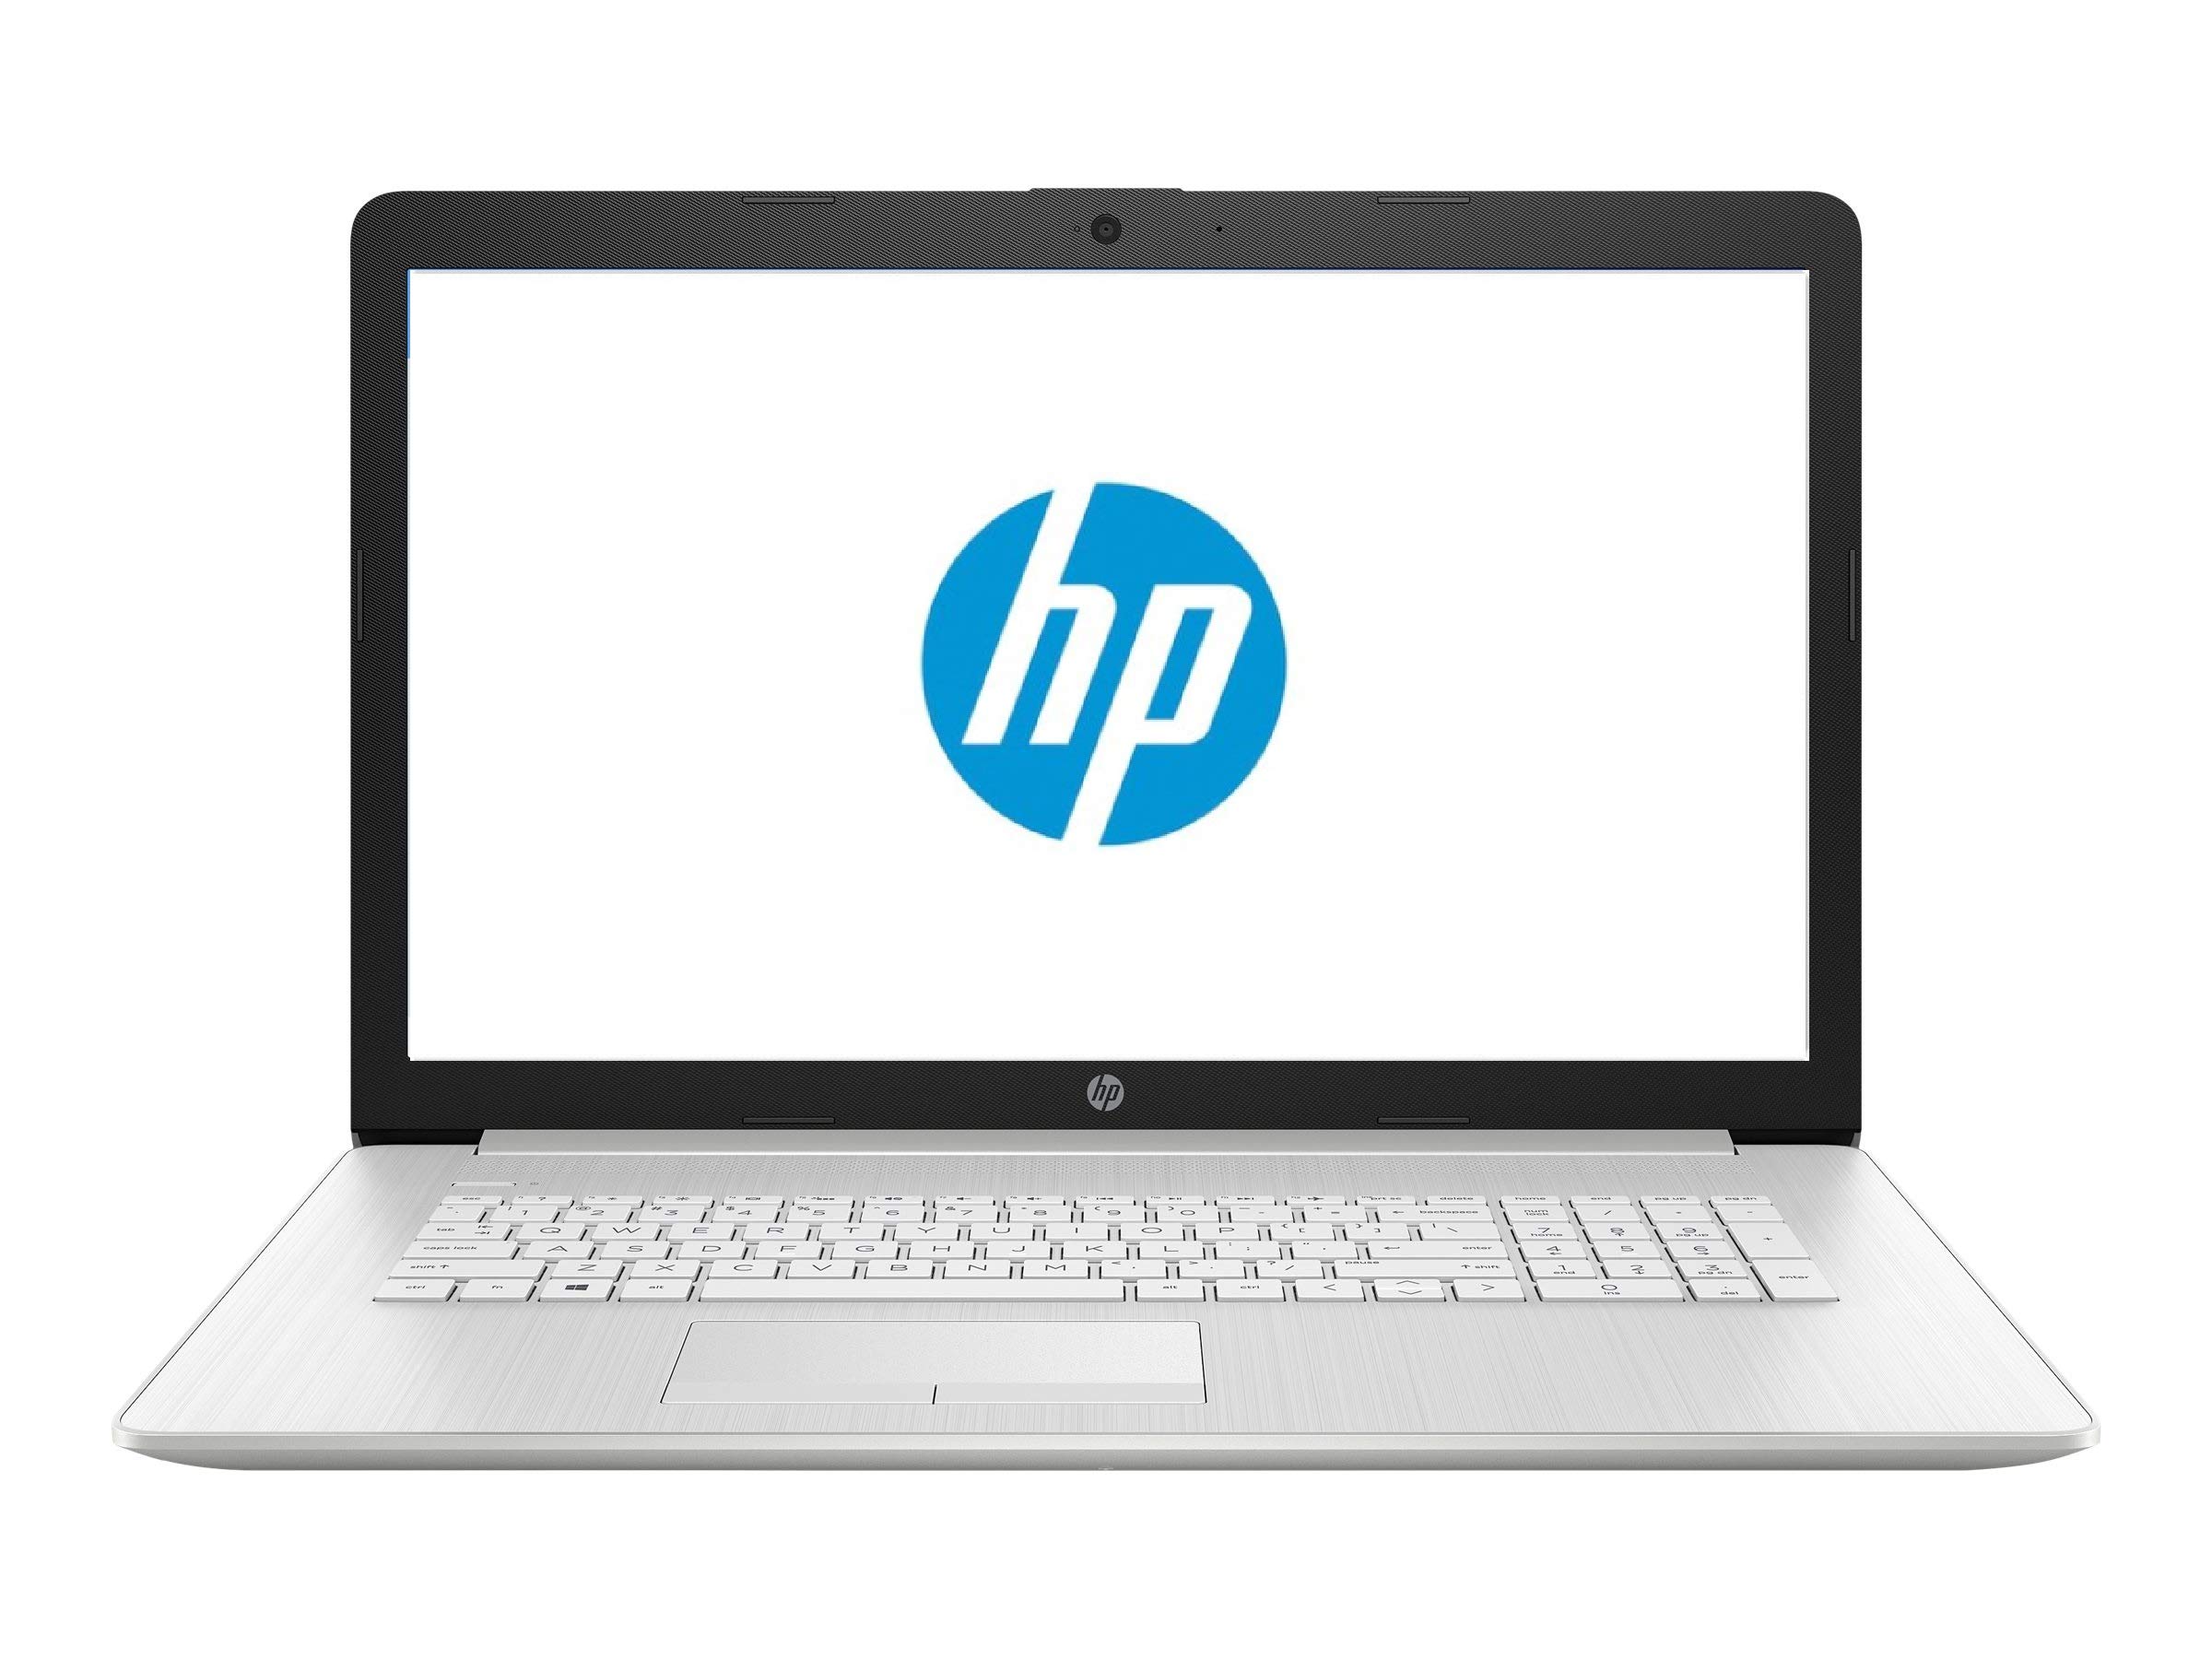 HP 17 Business Laptop - Linux Mint Cinnamon - Intel Quad-Core i5-10210U, 16GB RAM, 1TB HDD, 17.3" Inch HD+ (1600x900) Display, HDMI